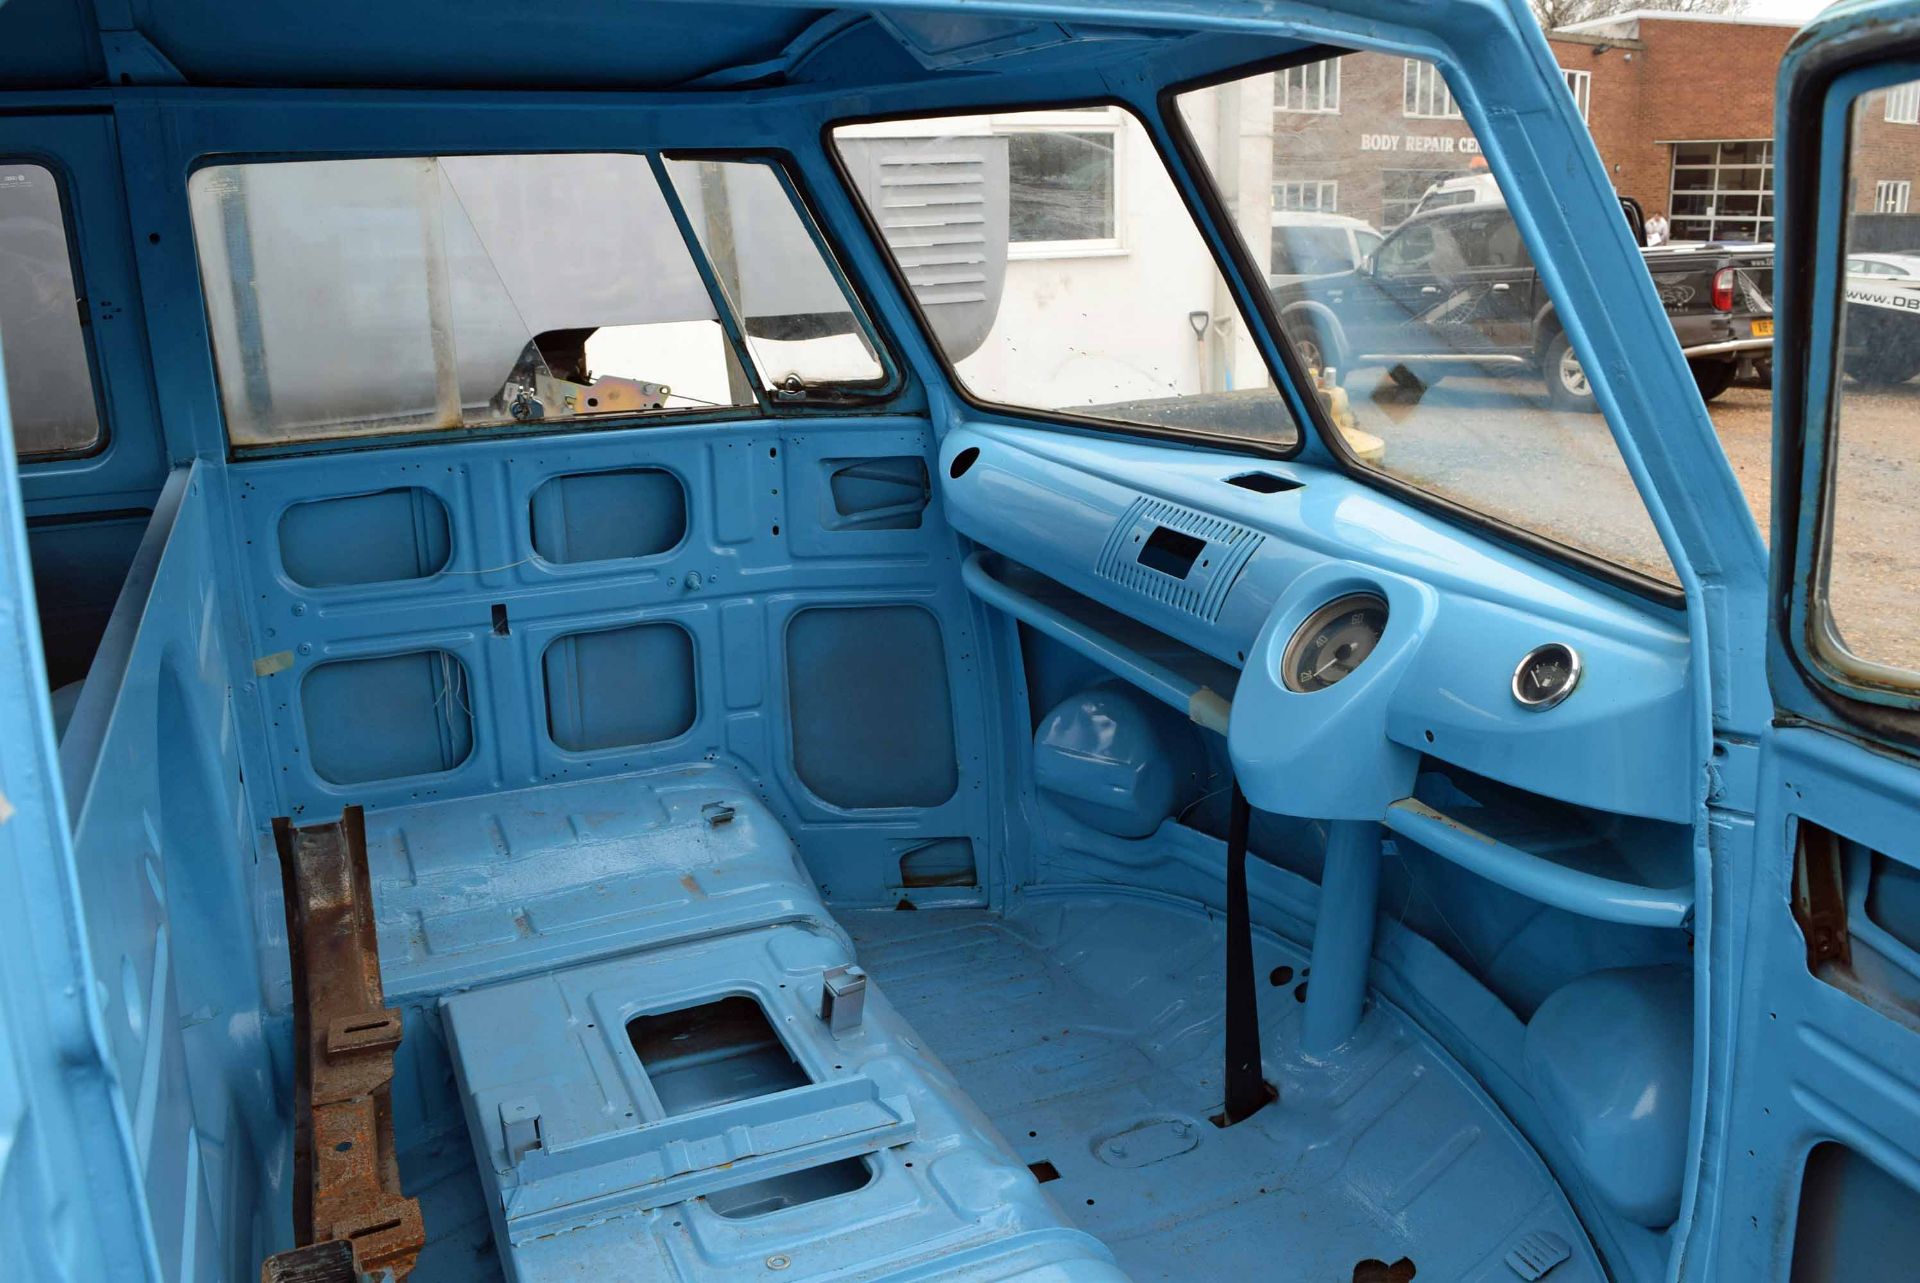 1975 VOLKSWAGEN Kombi Split Screen Van Rolling Chassis (Brazilian Import), Registration No. Not - Image 5 of 12